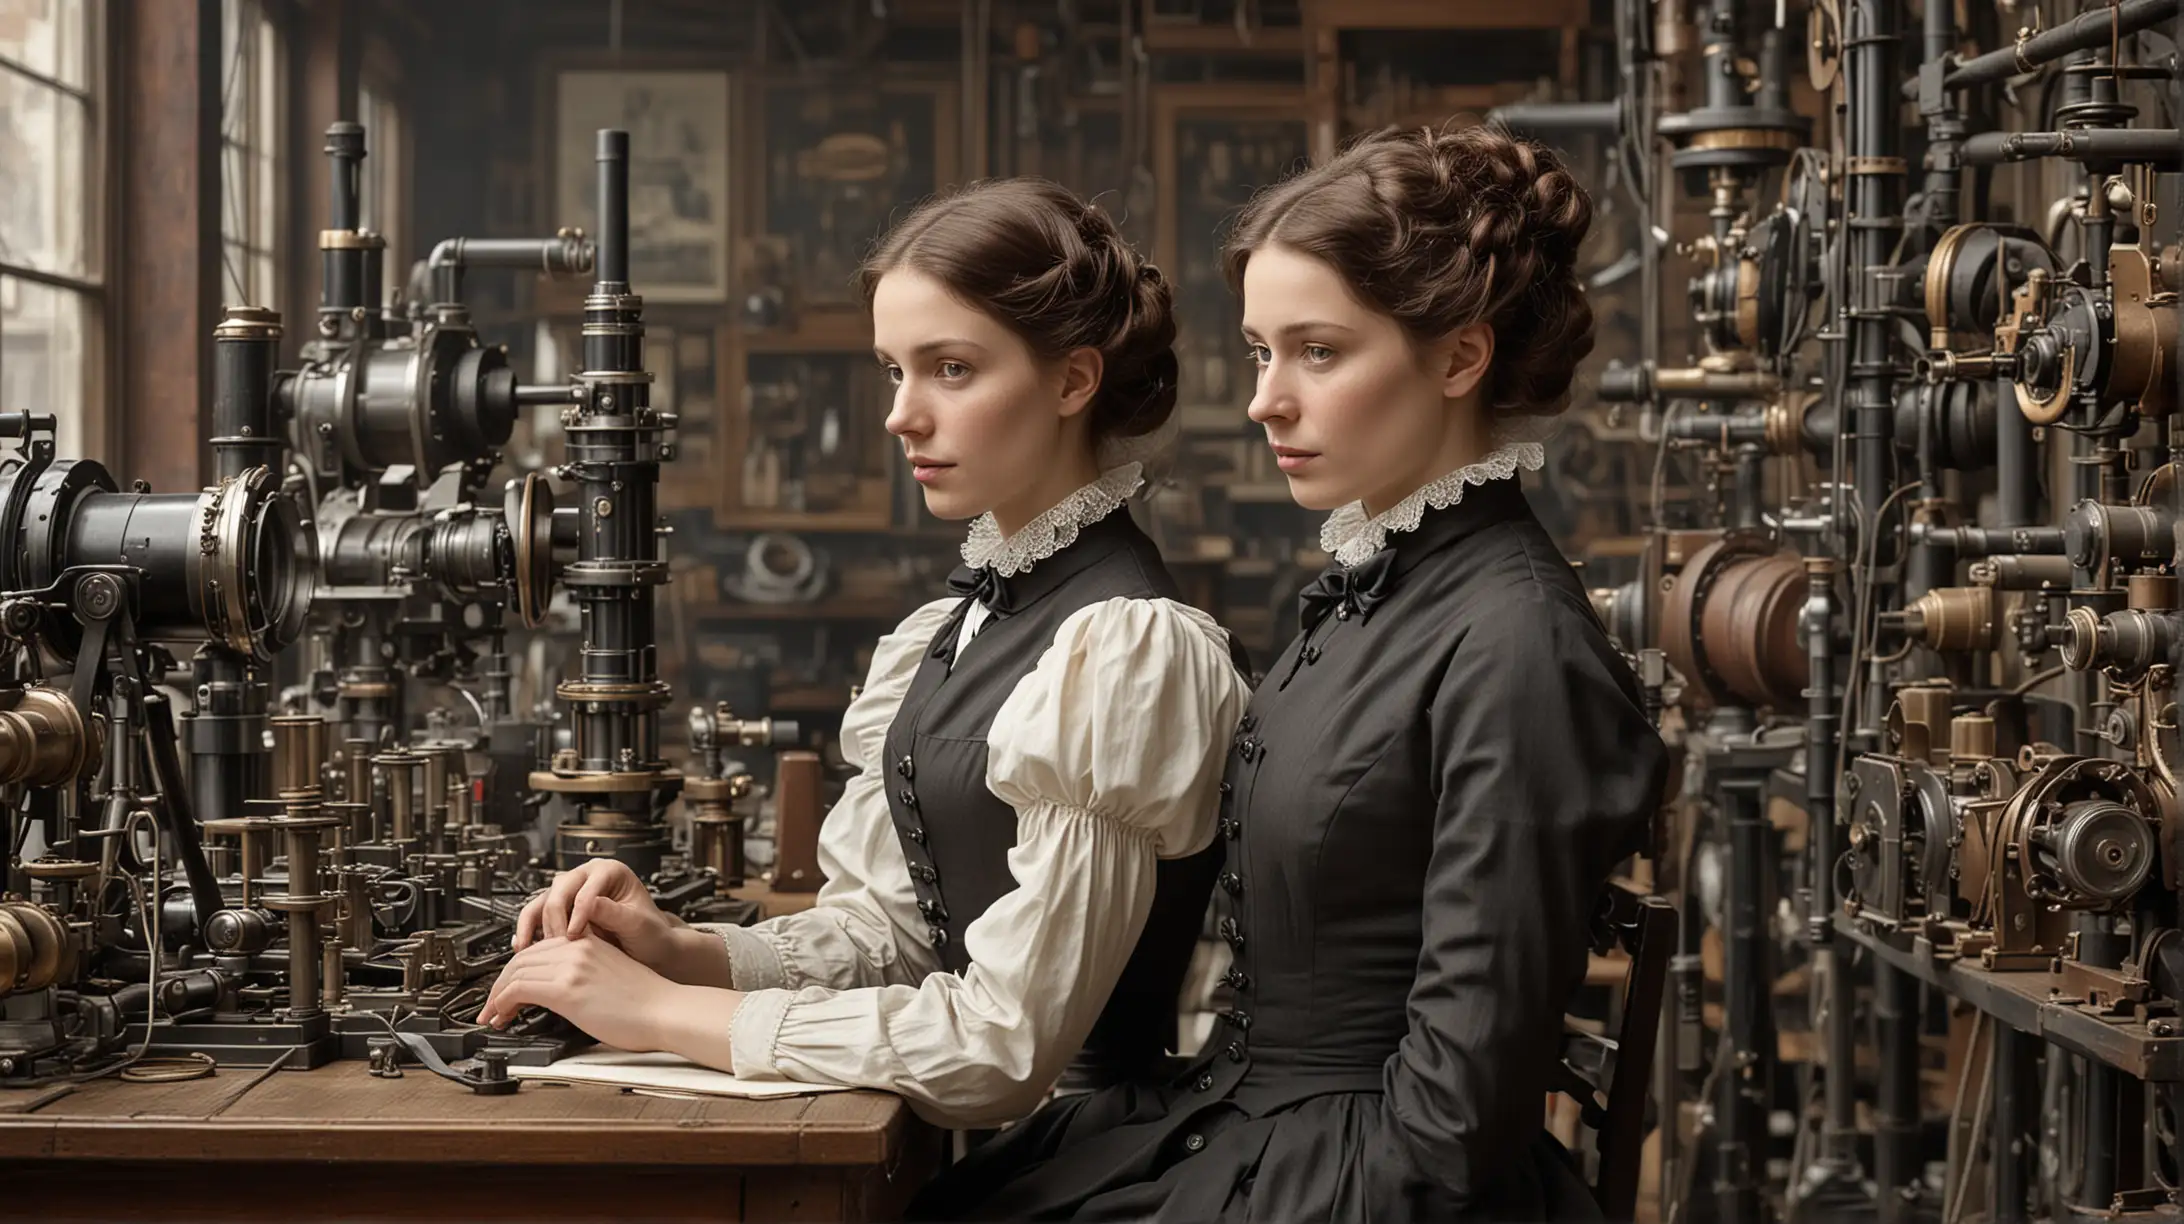 Dame una imagen realista como tomada por cámara profesional; "Los Avances Tecnológicos en la Era Victoriana: De la Revolución Industrial a la Innovación " Telégrafo: 